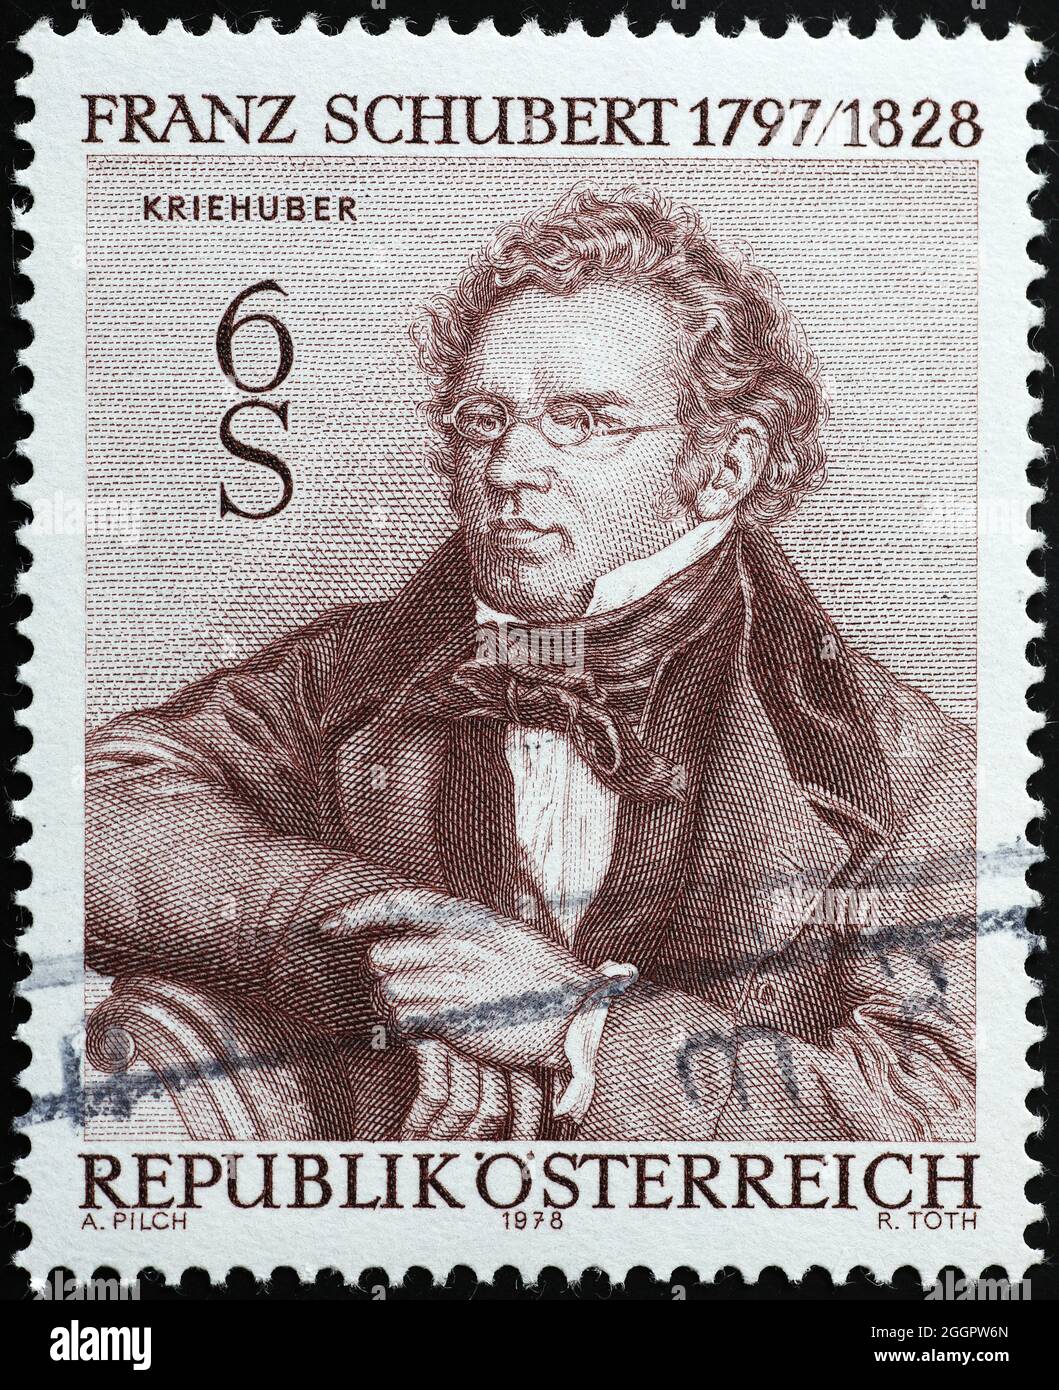 Franz Schubert portrait on postage stamp Stock Photo